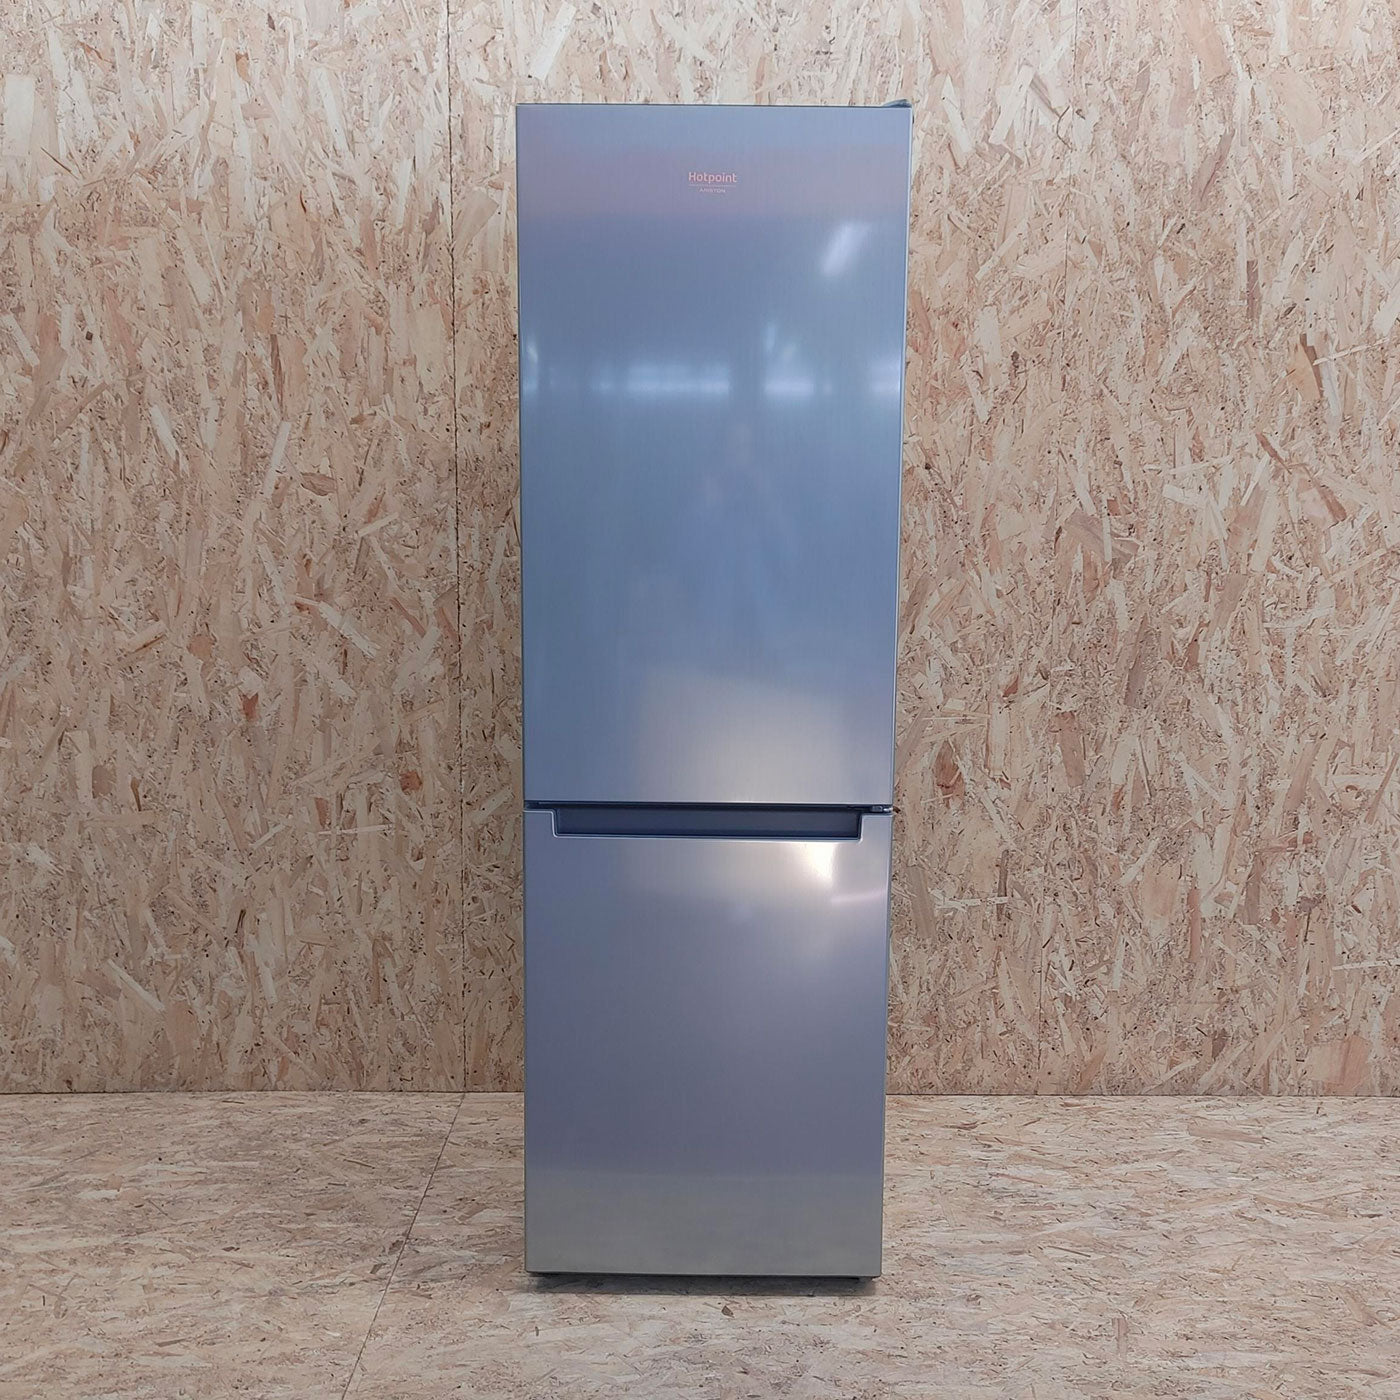 Hotpoint HA8 SN1E X frigorifero con congelatore Libera installazione 328 L F Argento